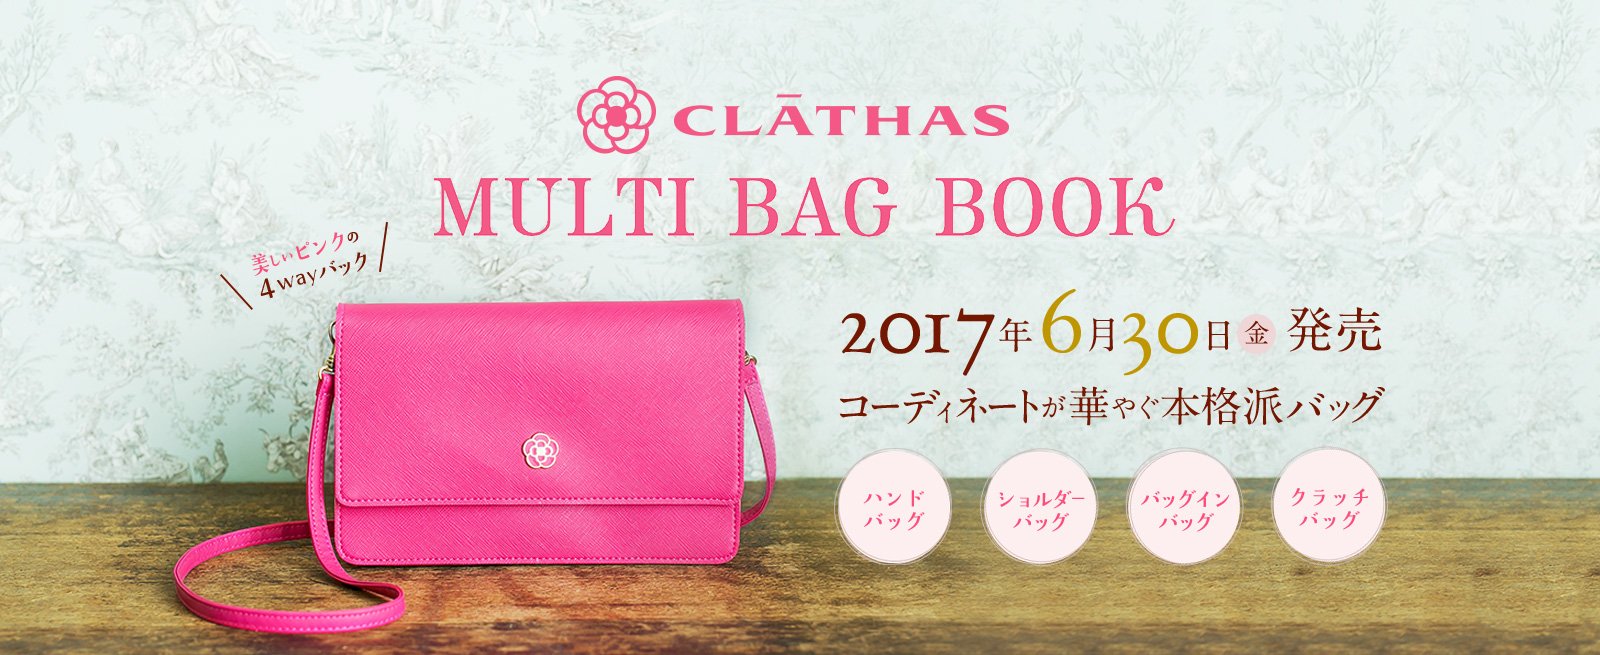 CLATHAS MULTI BAG BOOK 2017年6月30日 金 発売 コーディネートが華やぐ本格派バッグ ハンドバッグ ショルダーバッグ バッグインバッグ クラッチバッグ